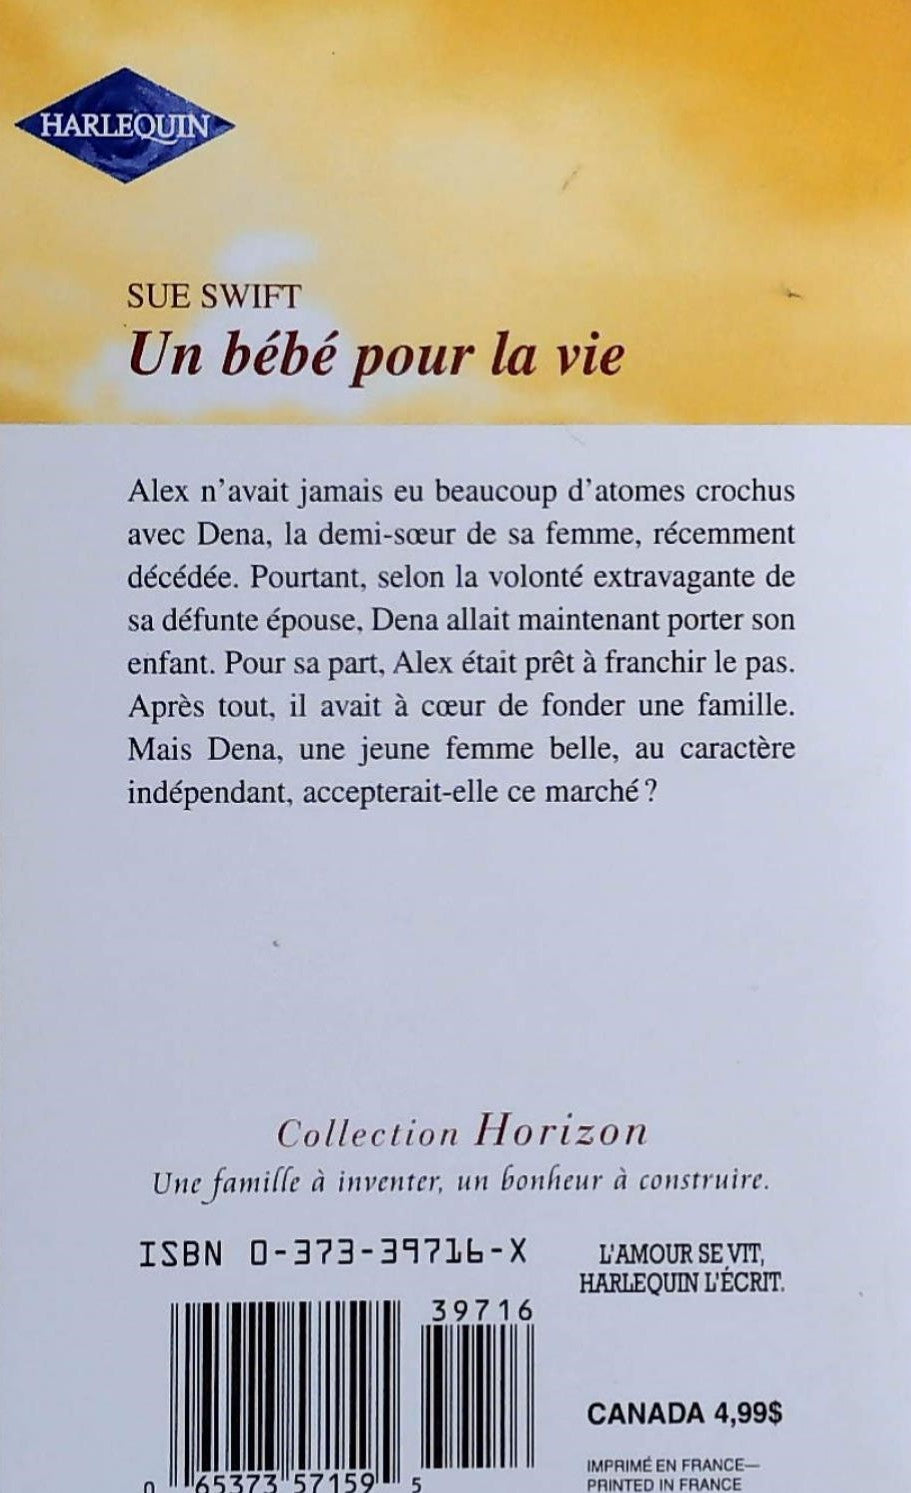 Horizon (Harlequin) # 716 : Un bébé pour la vie (Sue Swift)